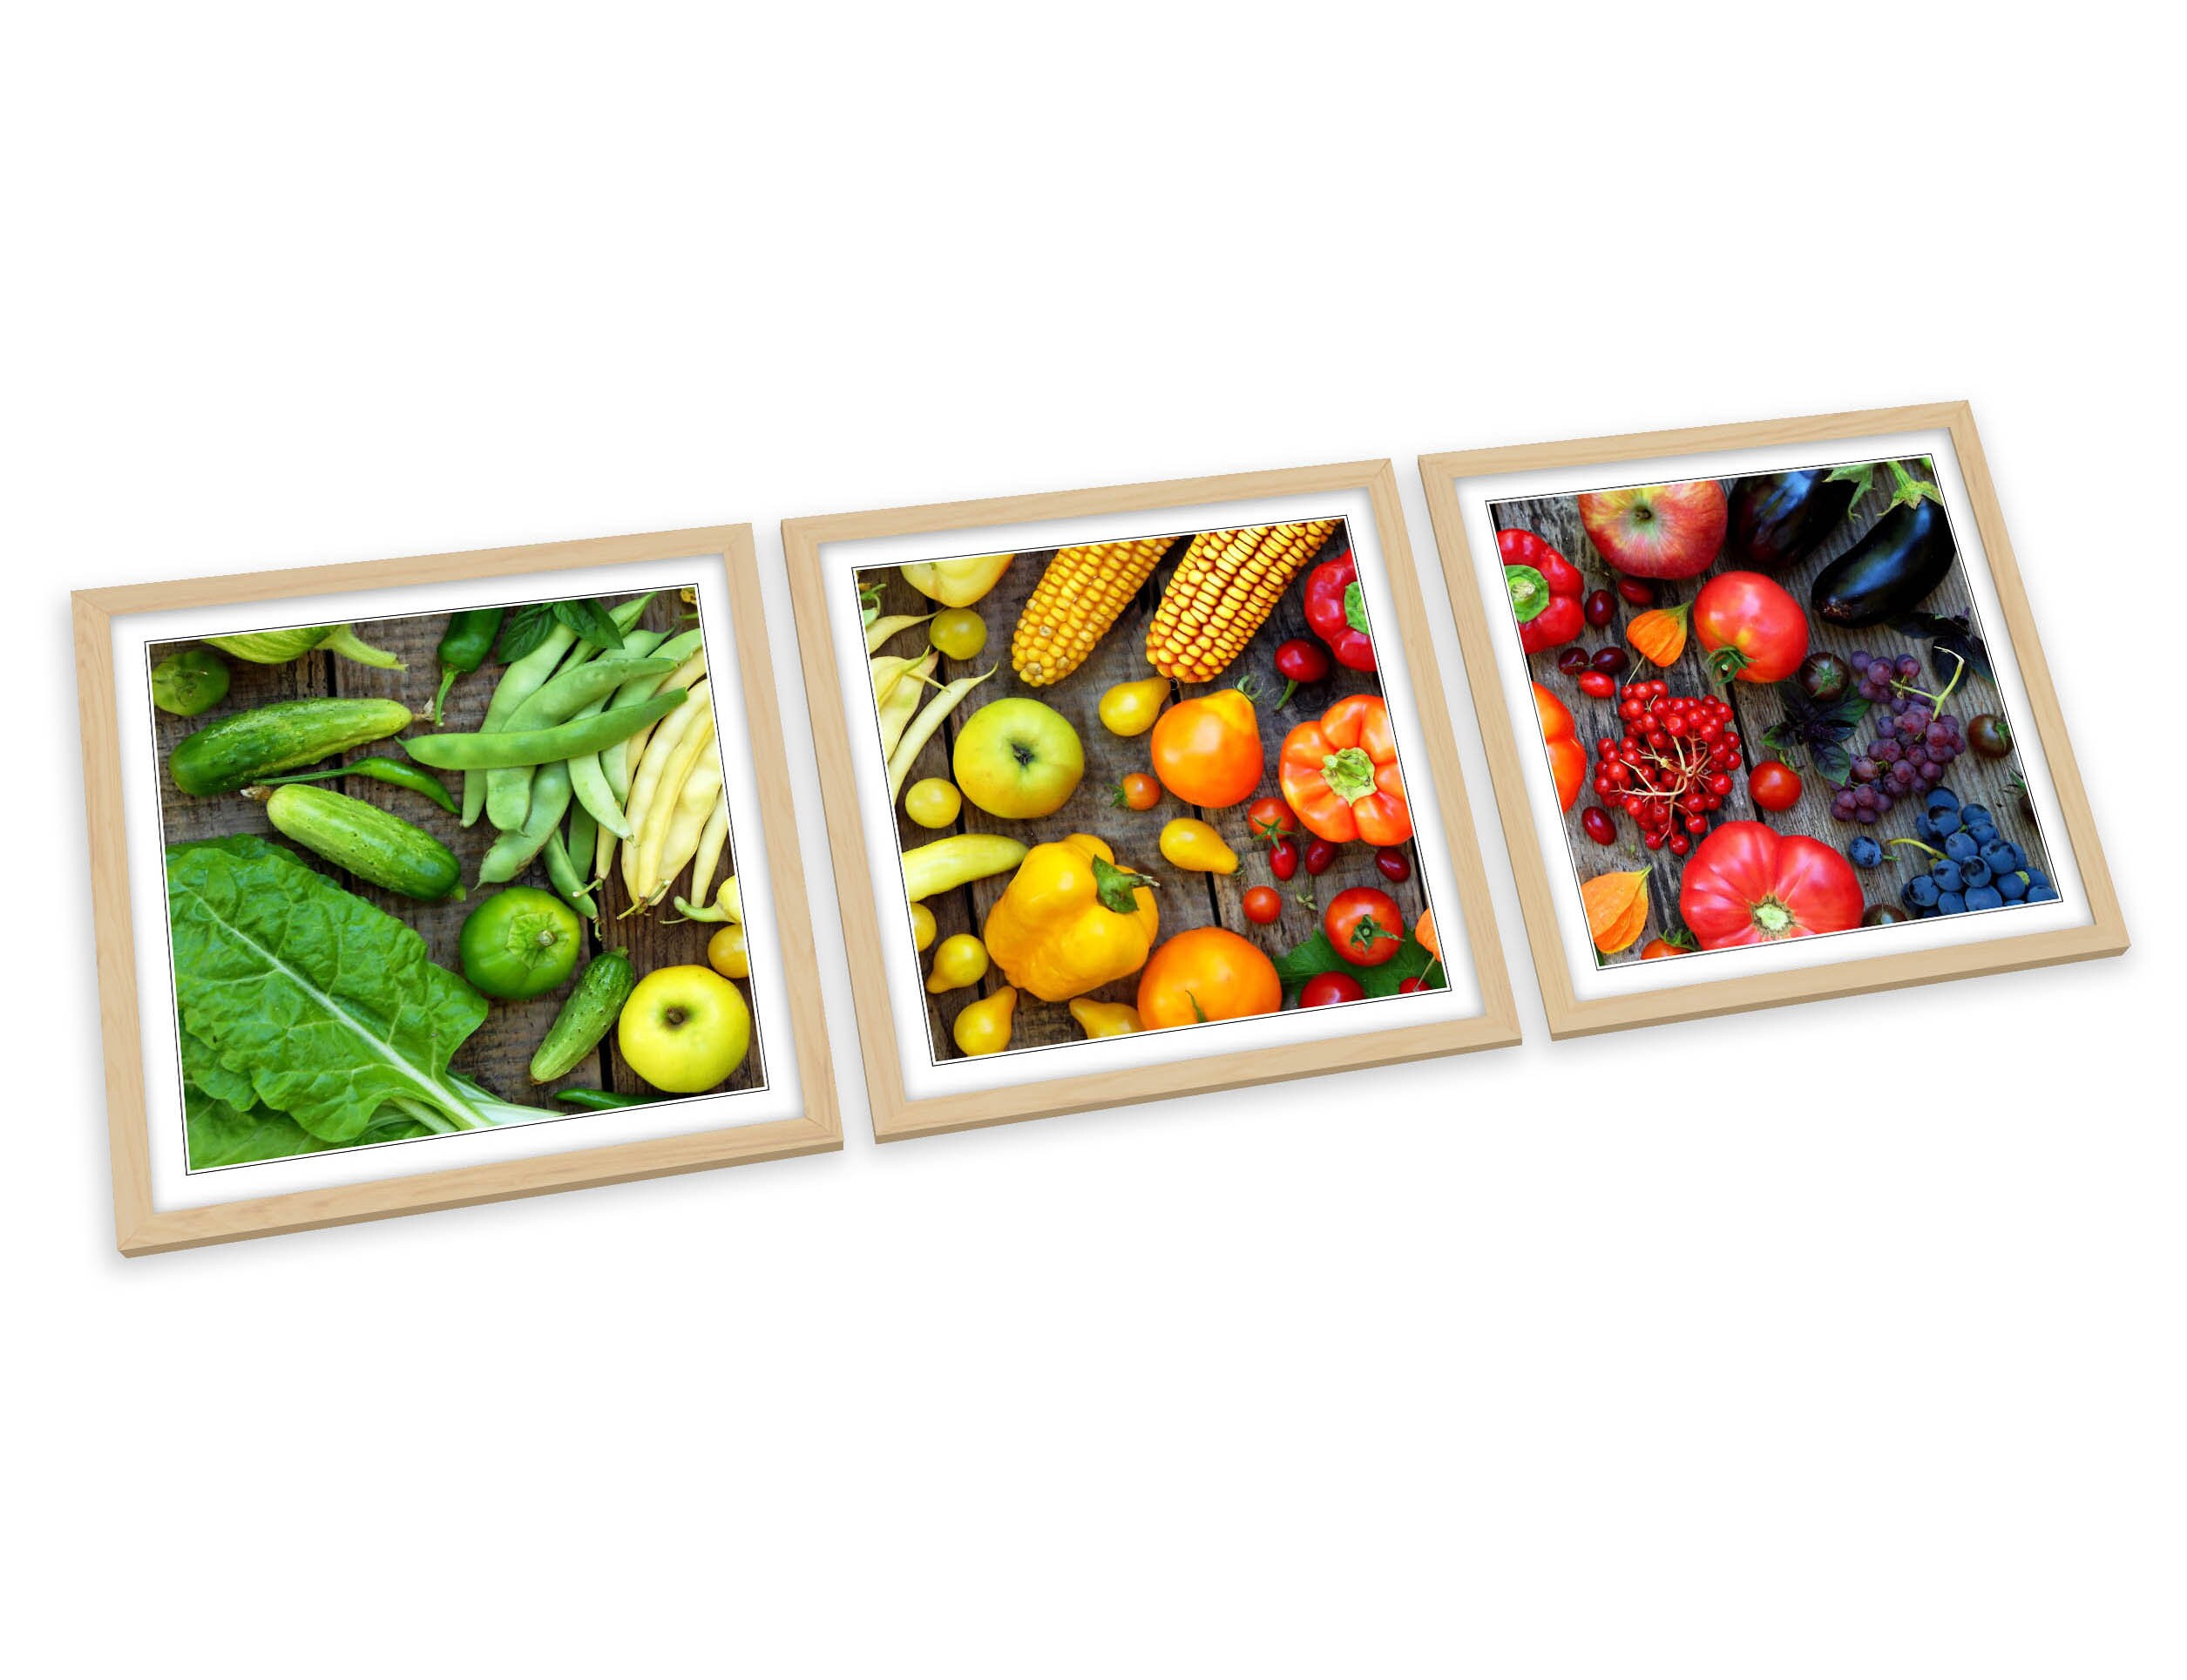 Fruit & Vegetables Kitchen FRAMED ART PRINTS Set Picture | Etsy